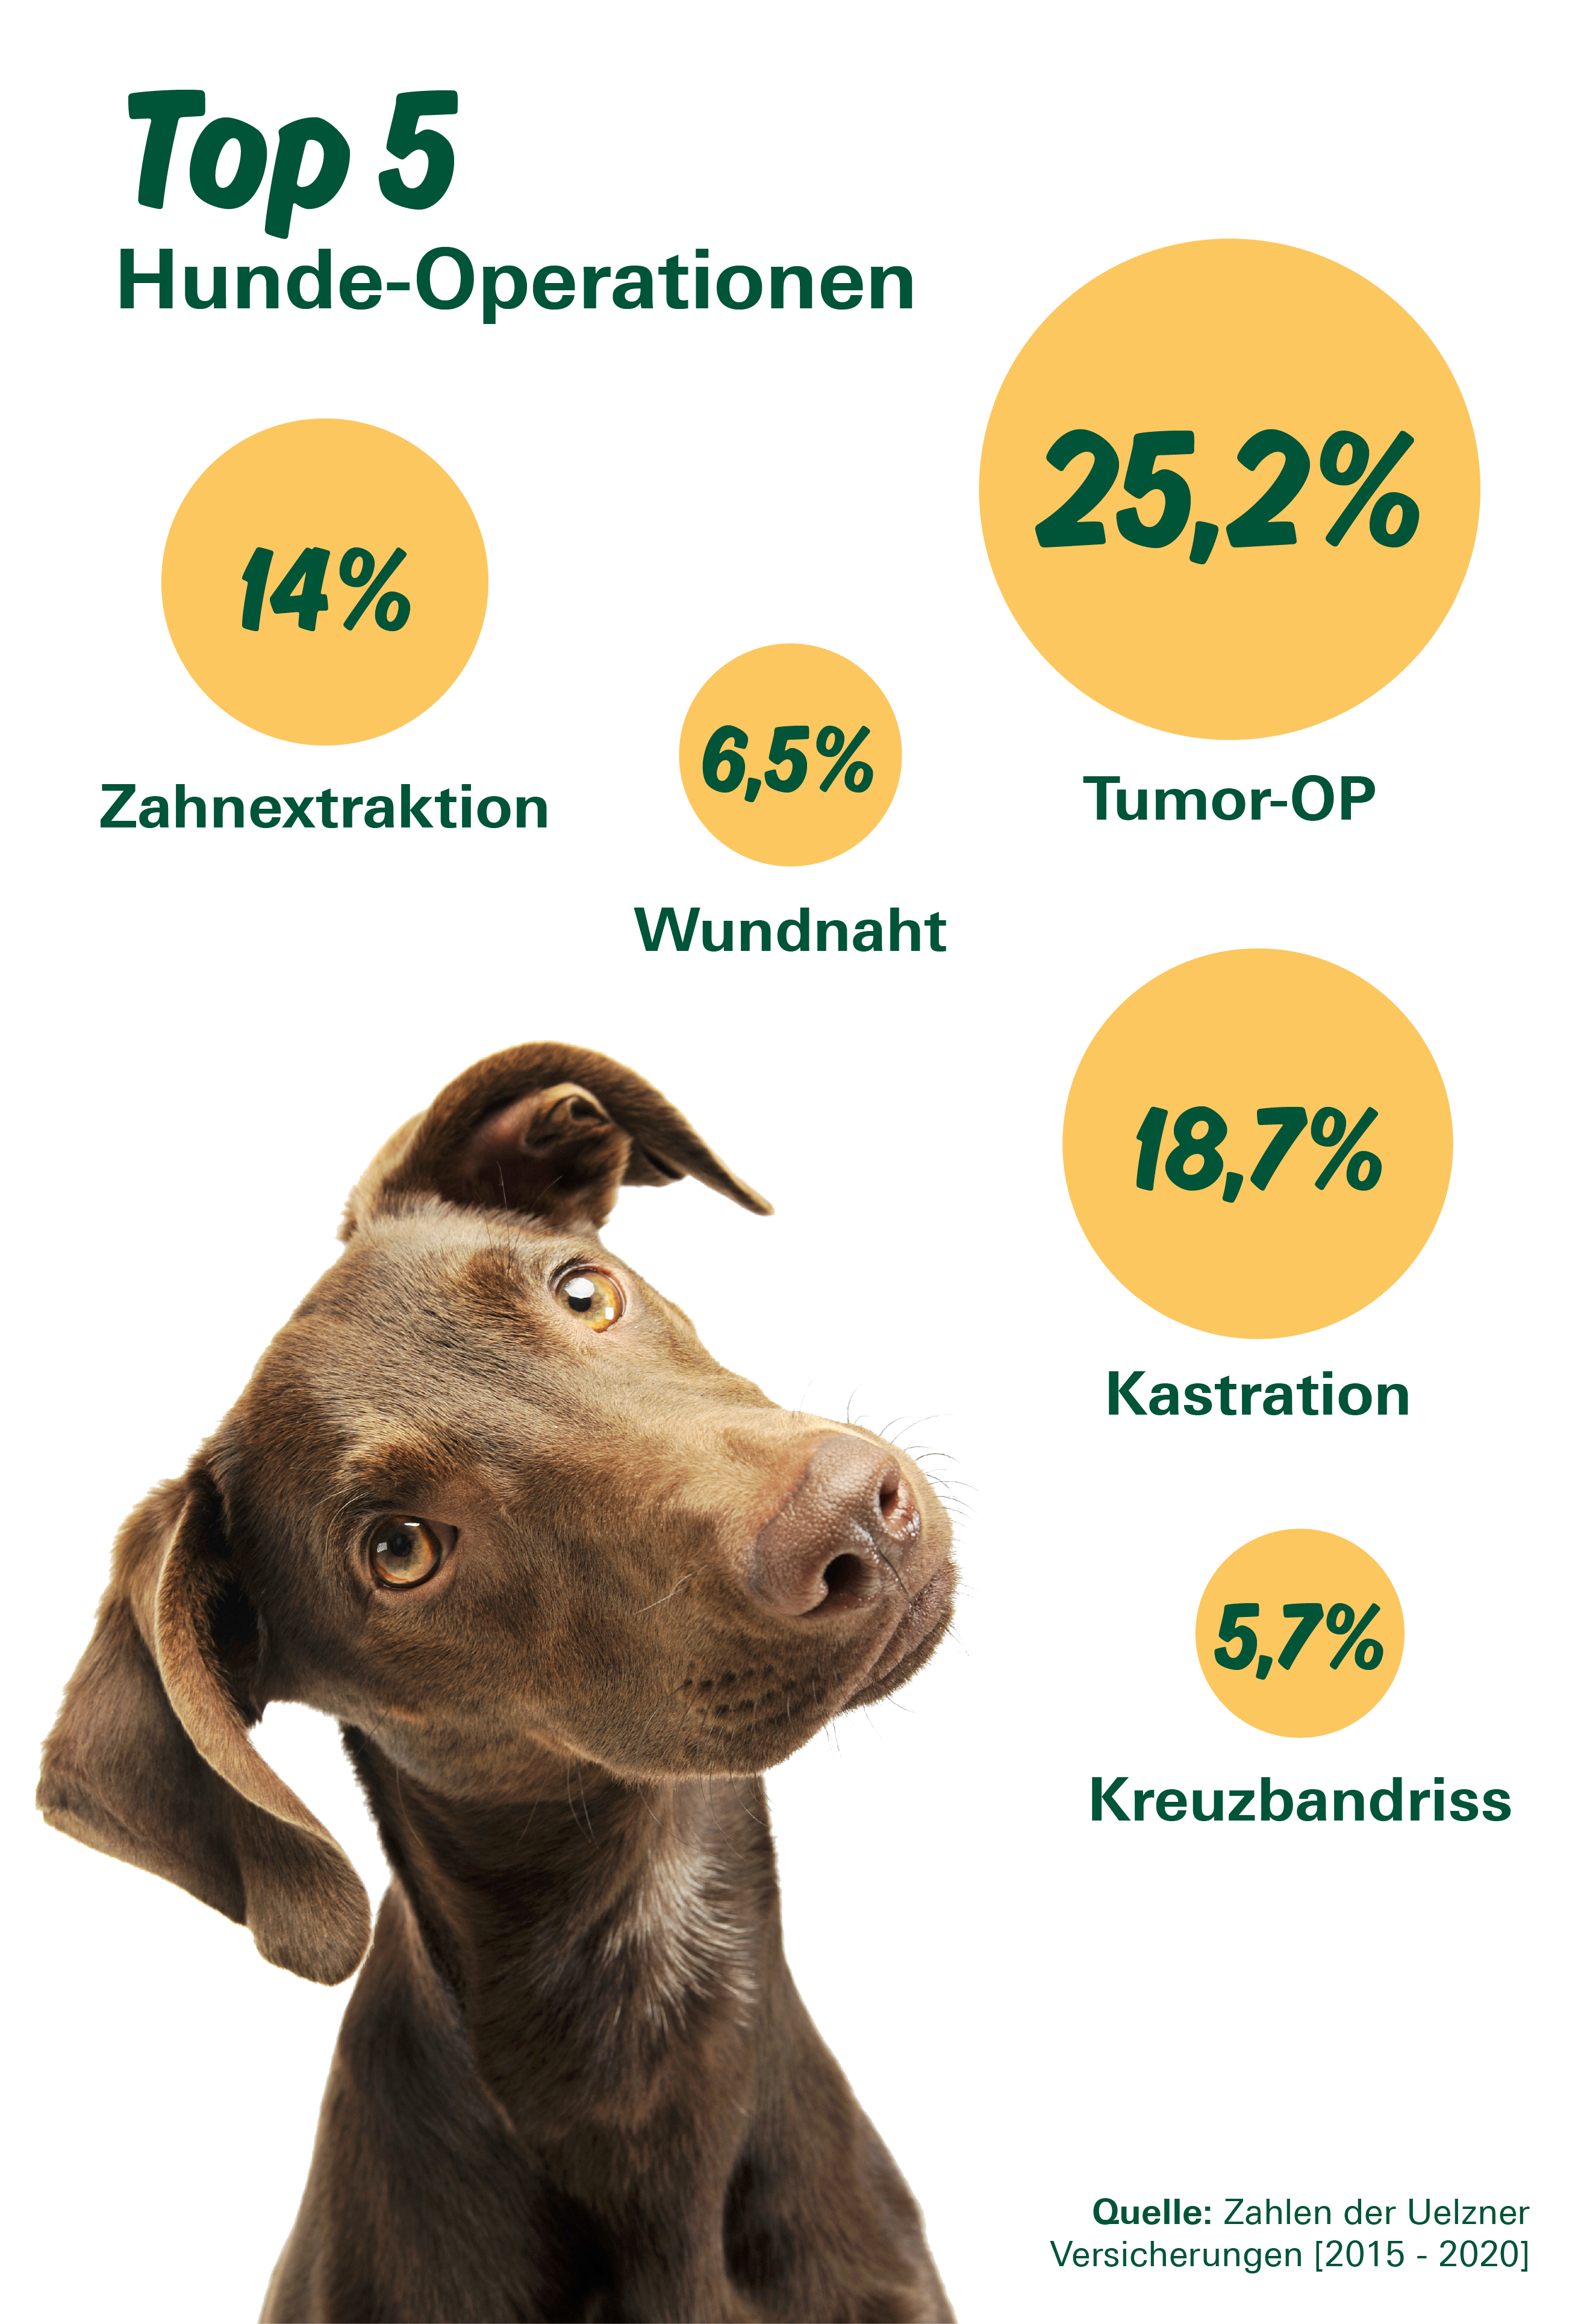 Tierkrankenversicherung: leistungsstarker Schutz für Haustier - DEVK